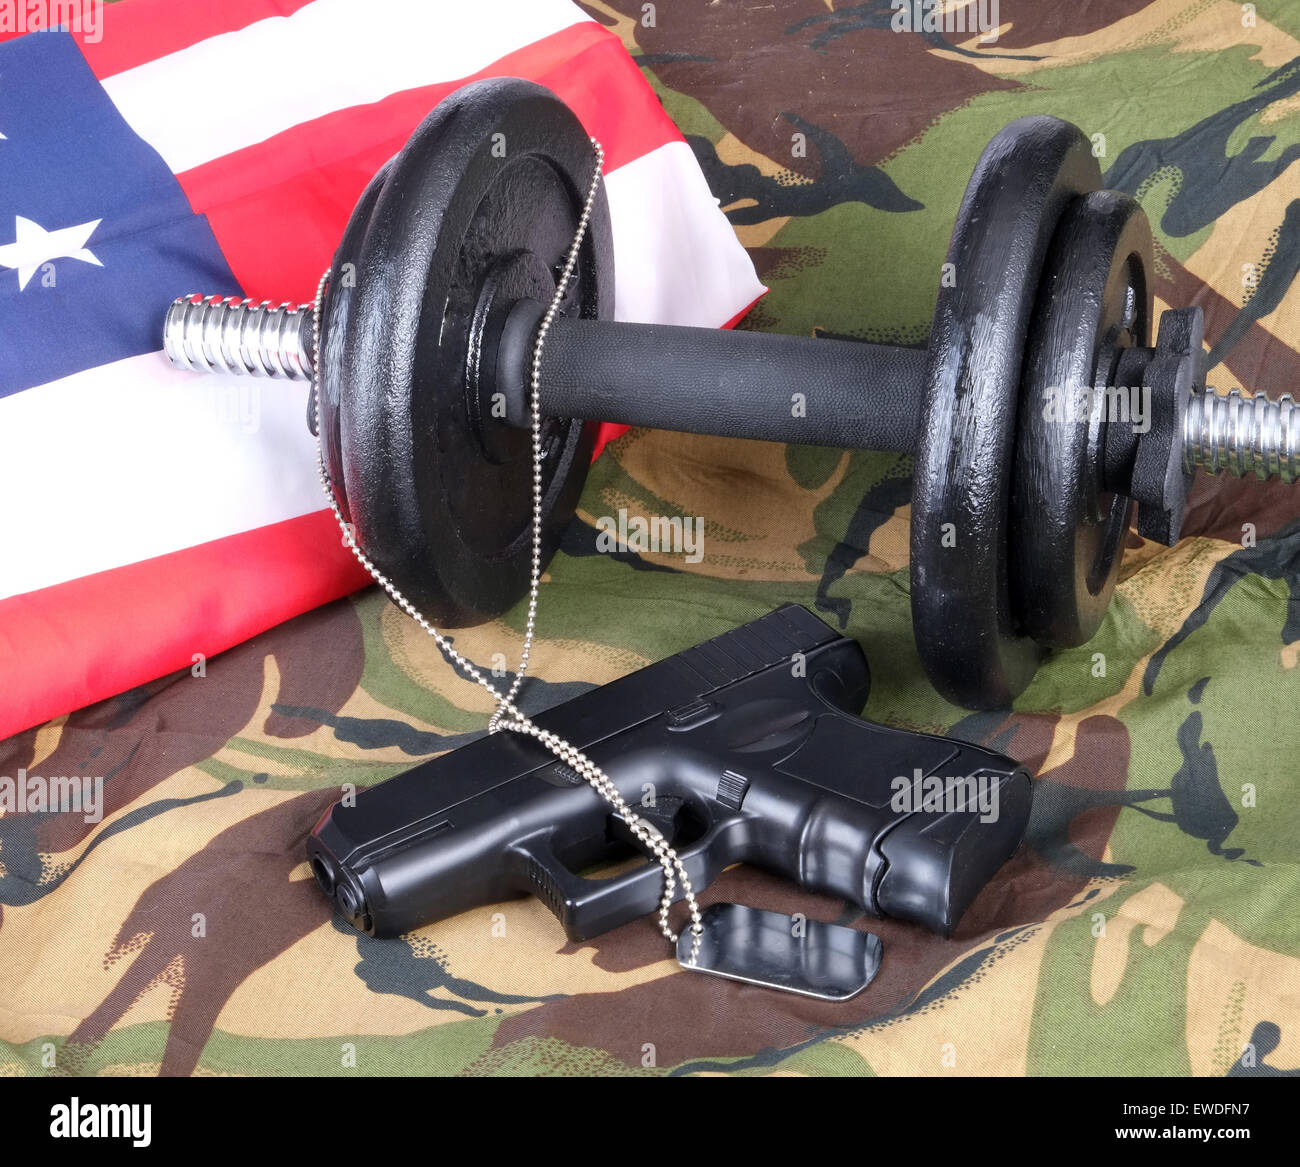 Montare il servizio militare? Concetto di immagine, pesi, camo camouflage Pistola replica dog-tag Foto Stock